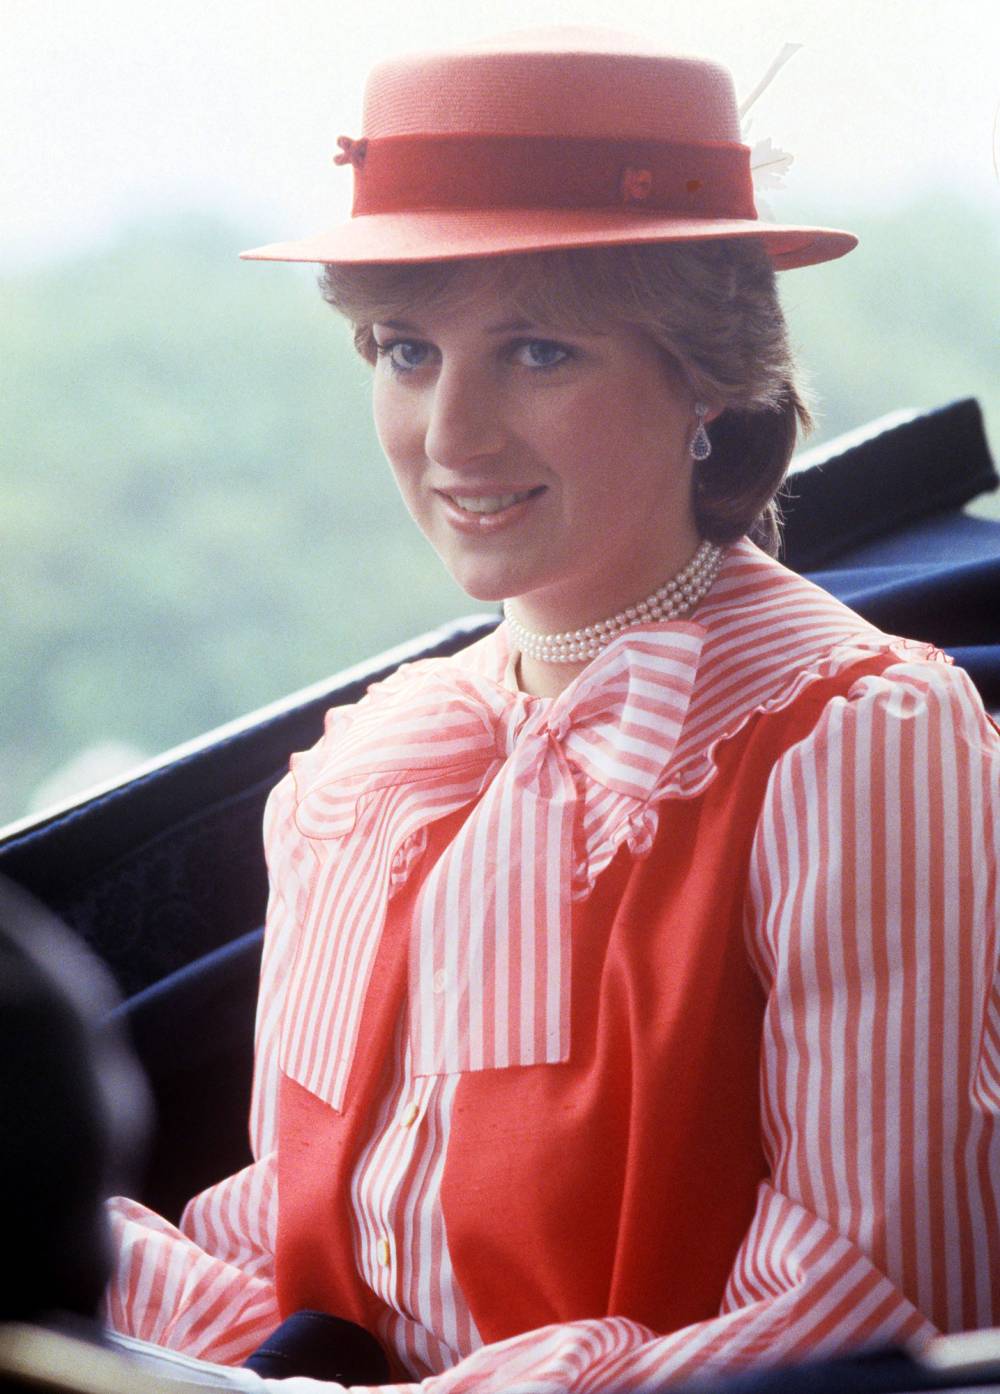 Meghan Markle Wears Princess Diana’s Bracelet in CBS Tell-All